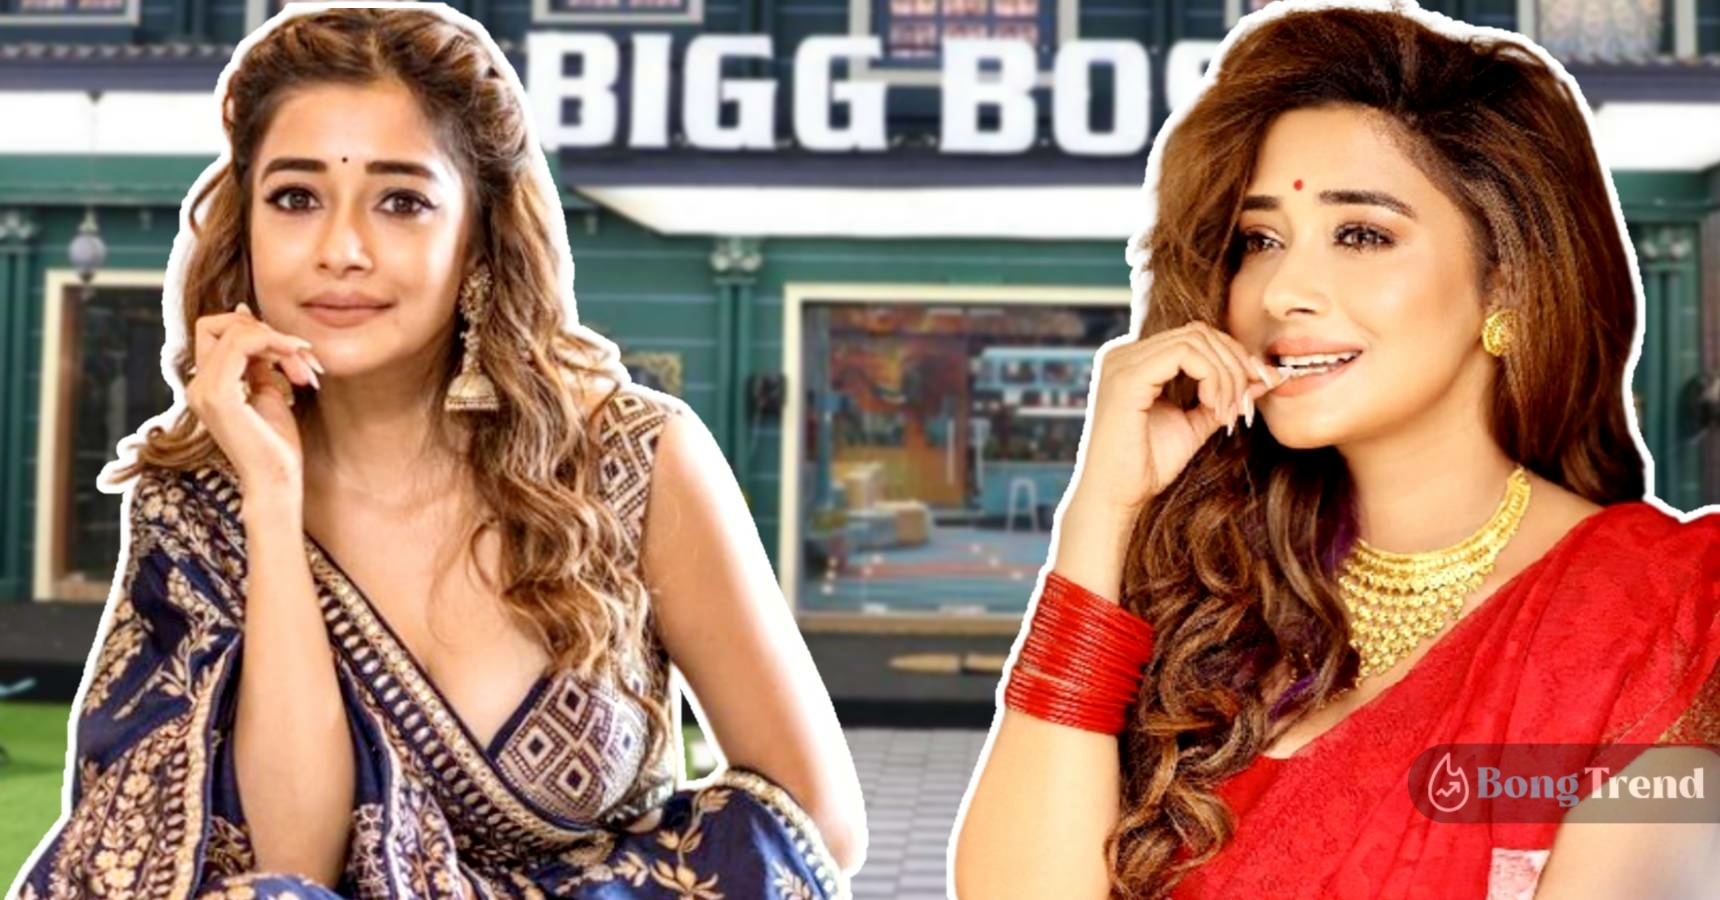 Take a look at Bigg Boss 16 contestant Bengali actress Tina Datta’s journey